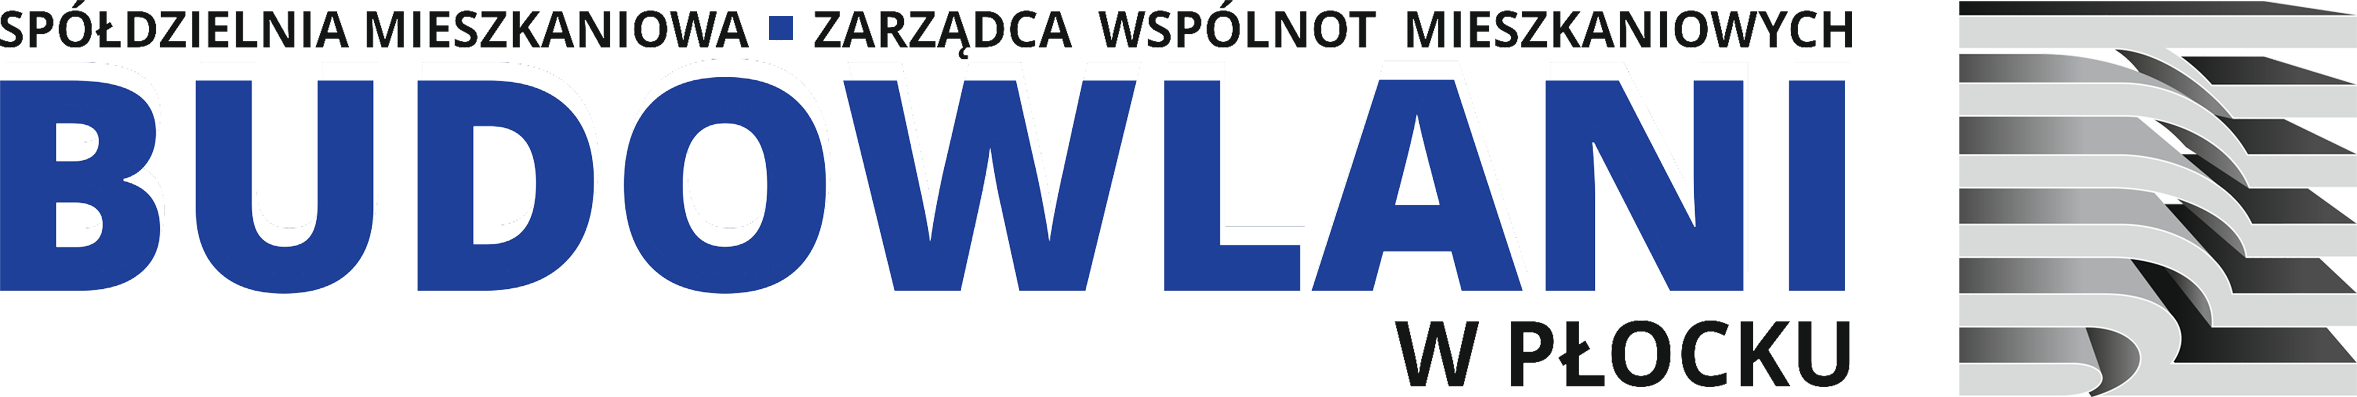 Logo - Środek strony